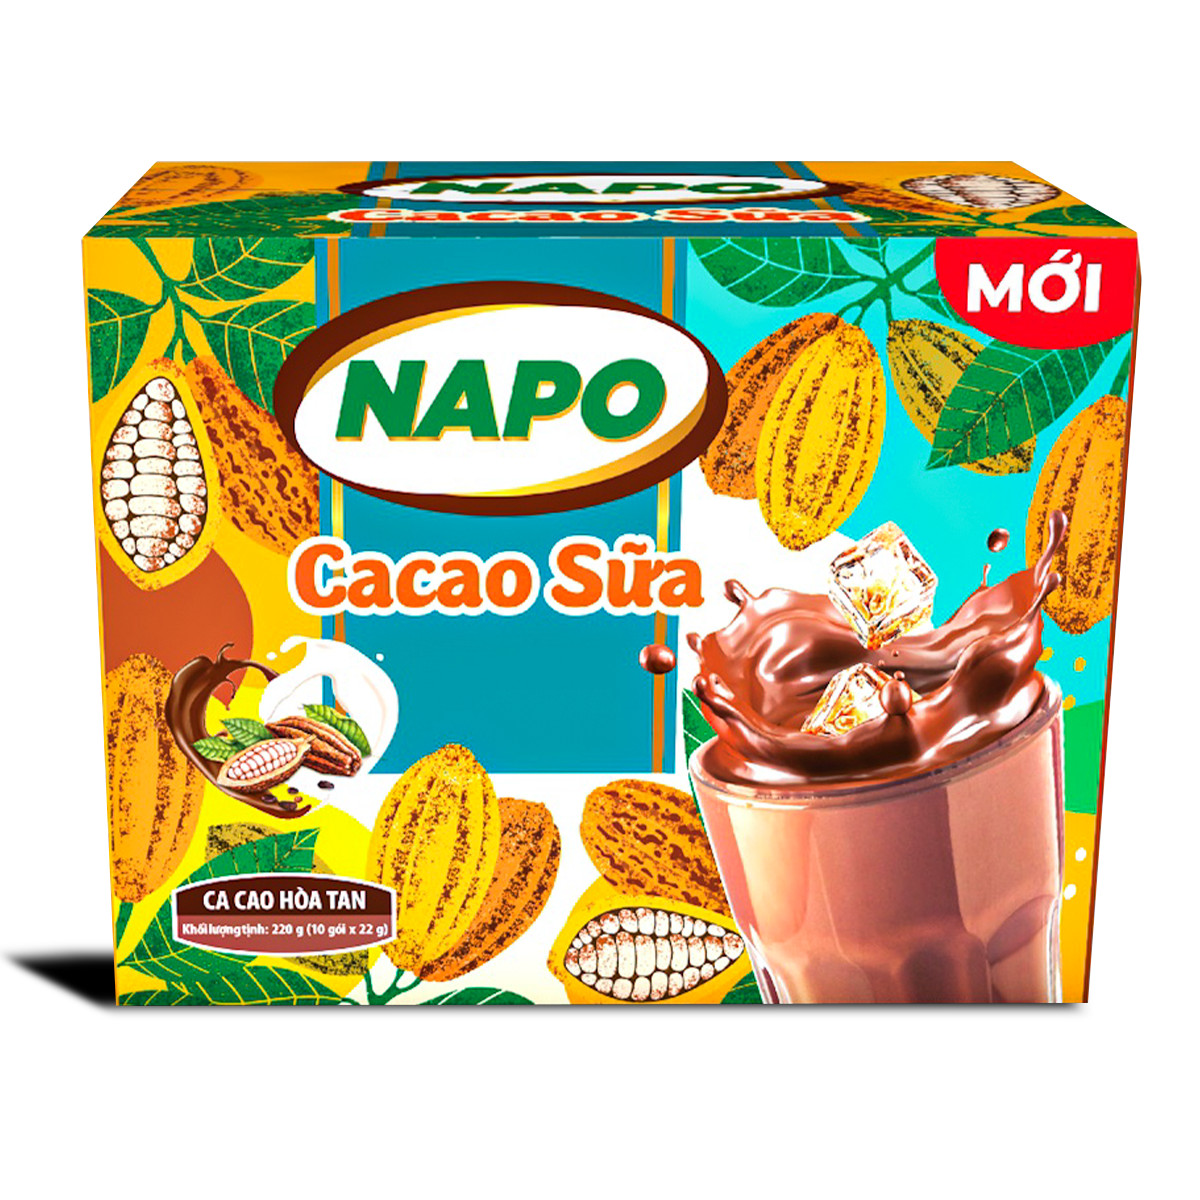 Napoli-San-pham--ca-cao-sua-napo-cocoa-with-milk-